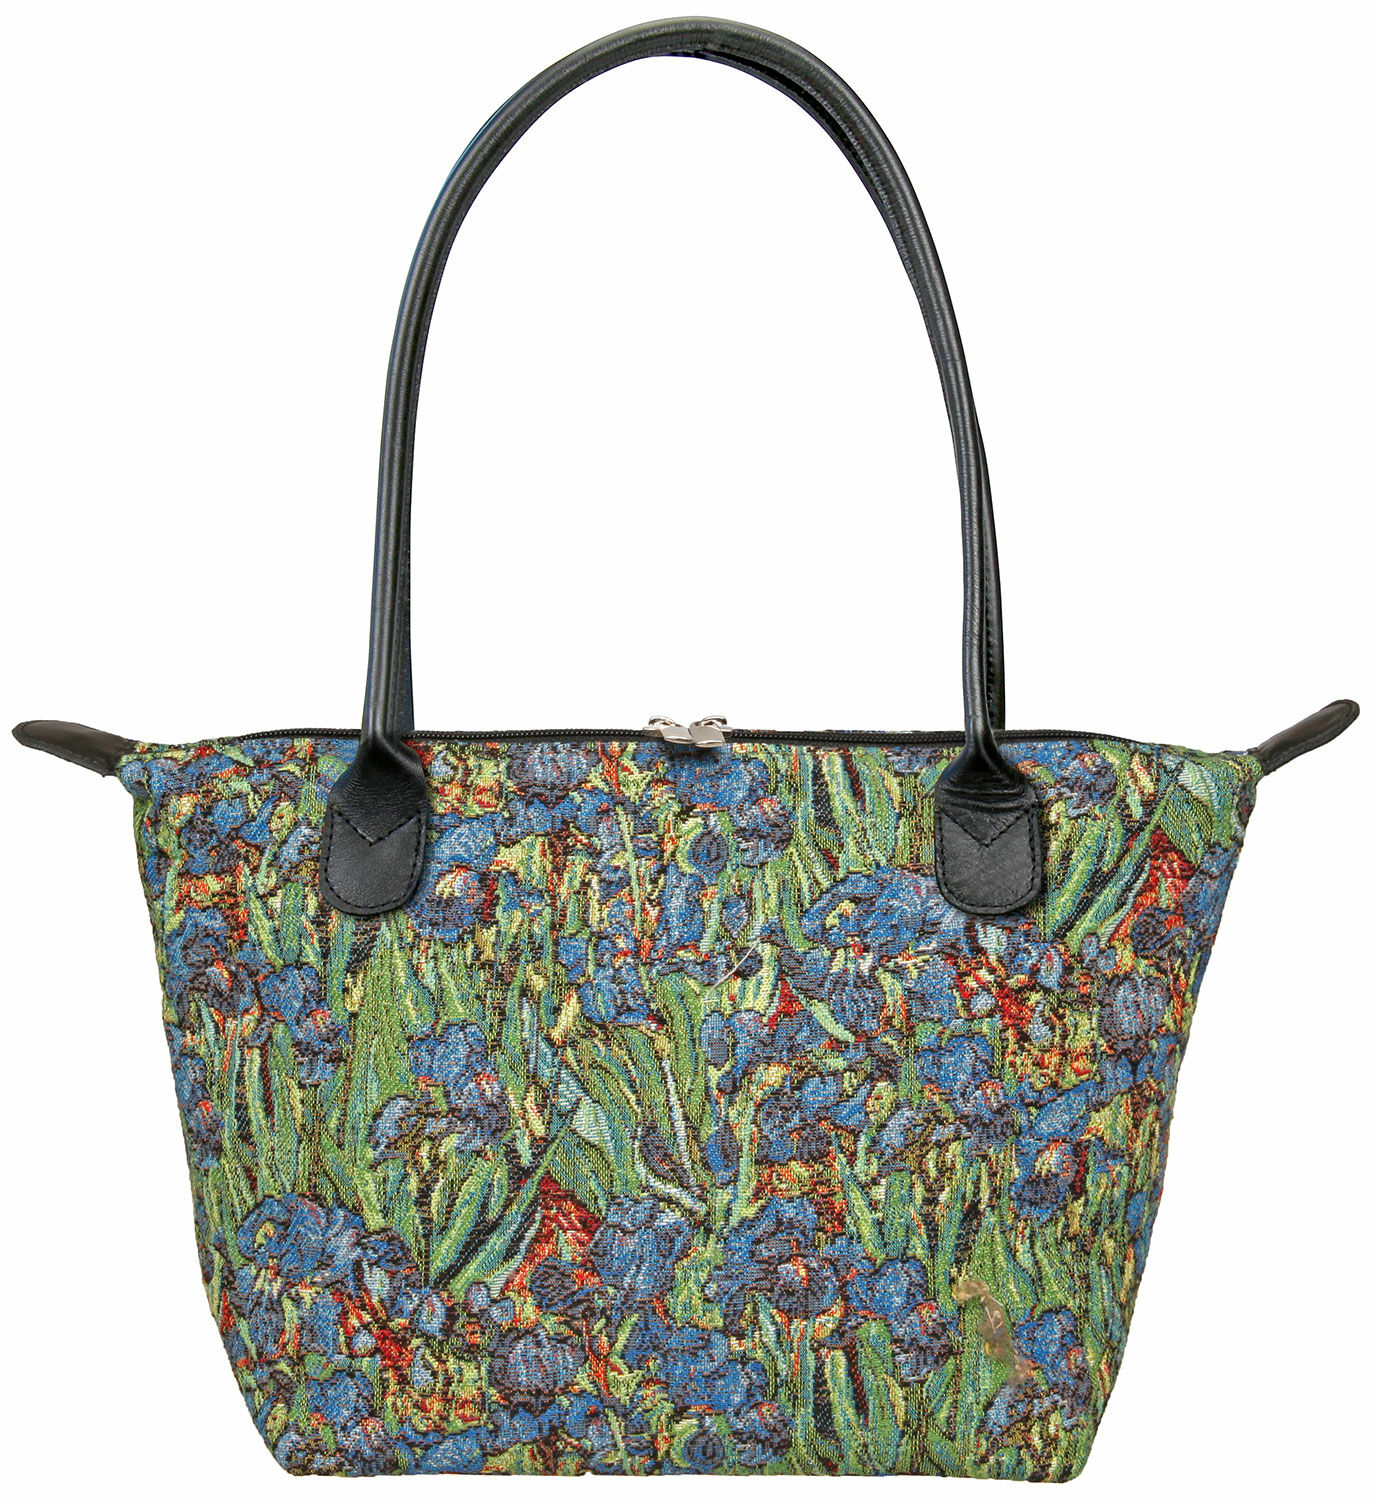 Handtasche "Iris" von Vincent van Gogh